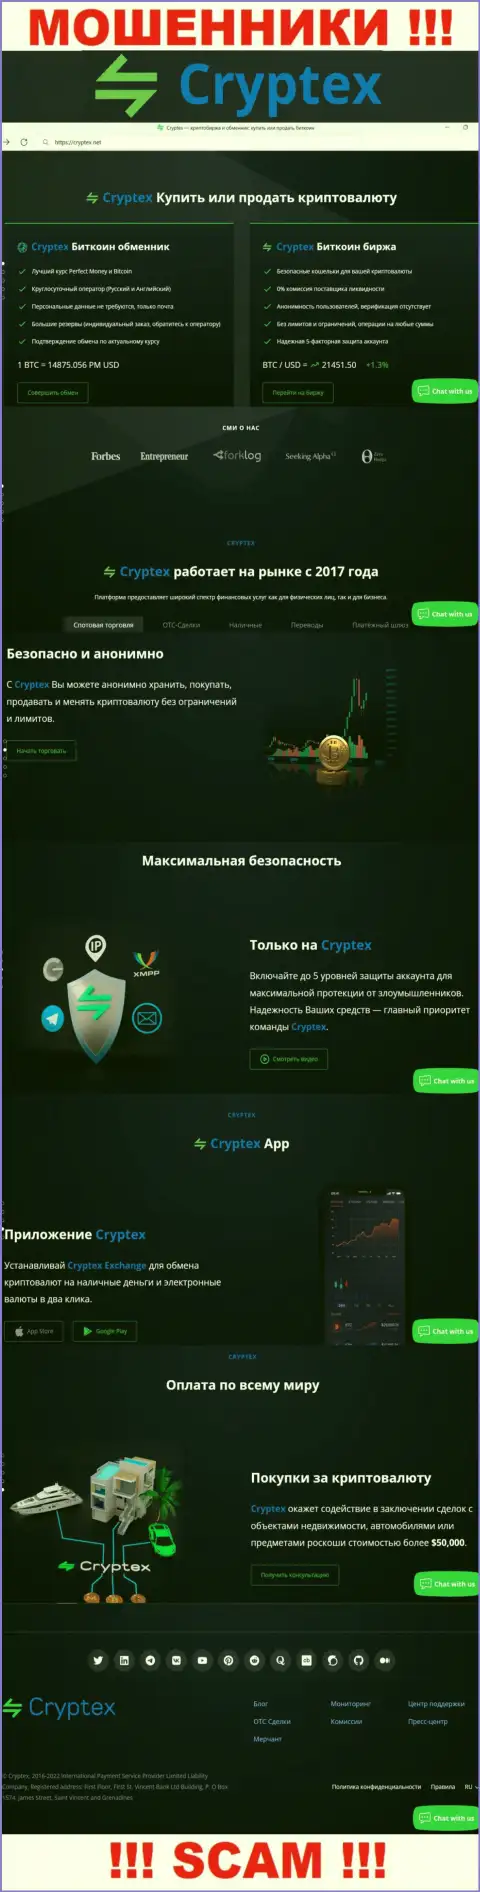 Скрин официального сайта противозаконно действующей компании Криптекс Нет